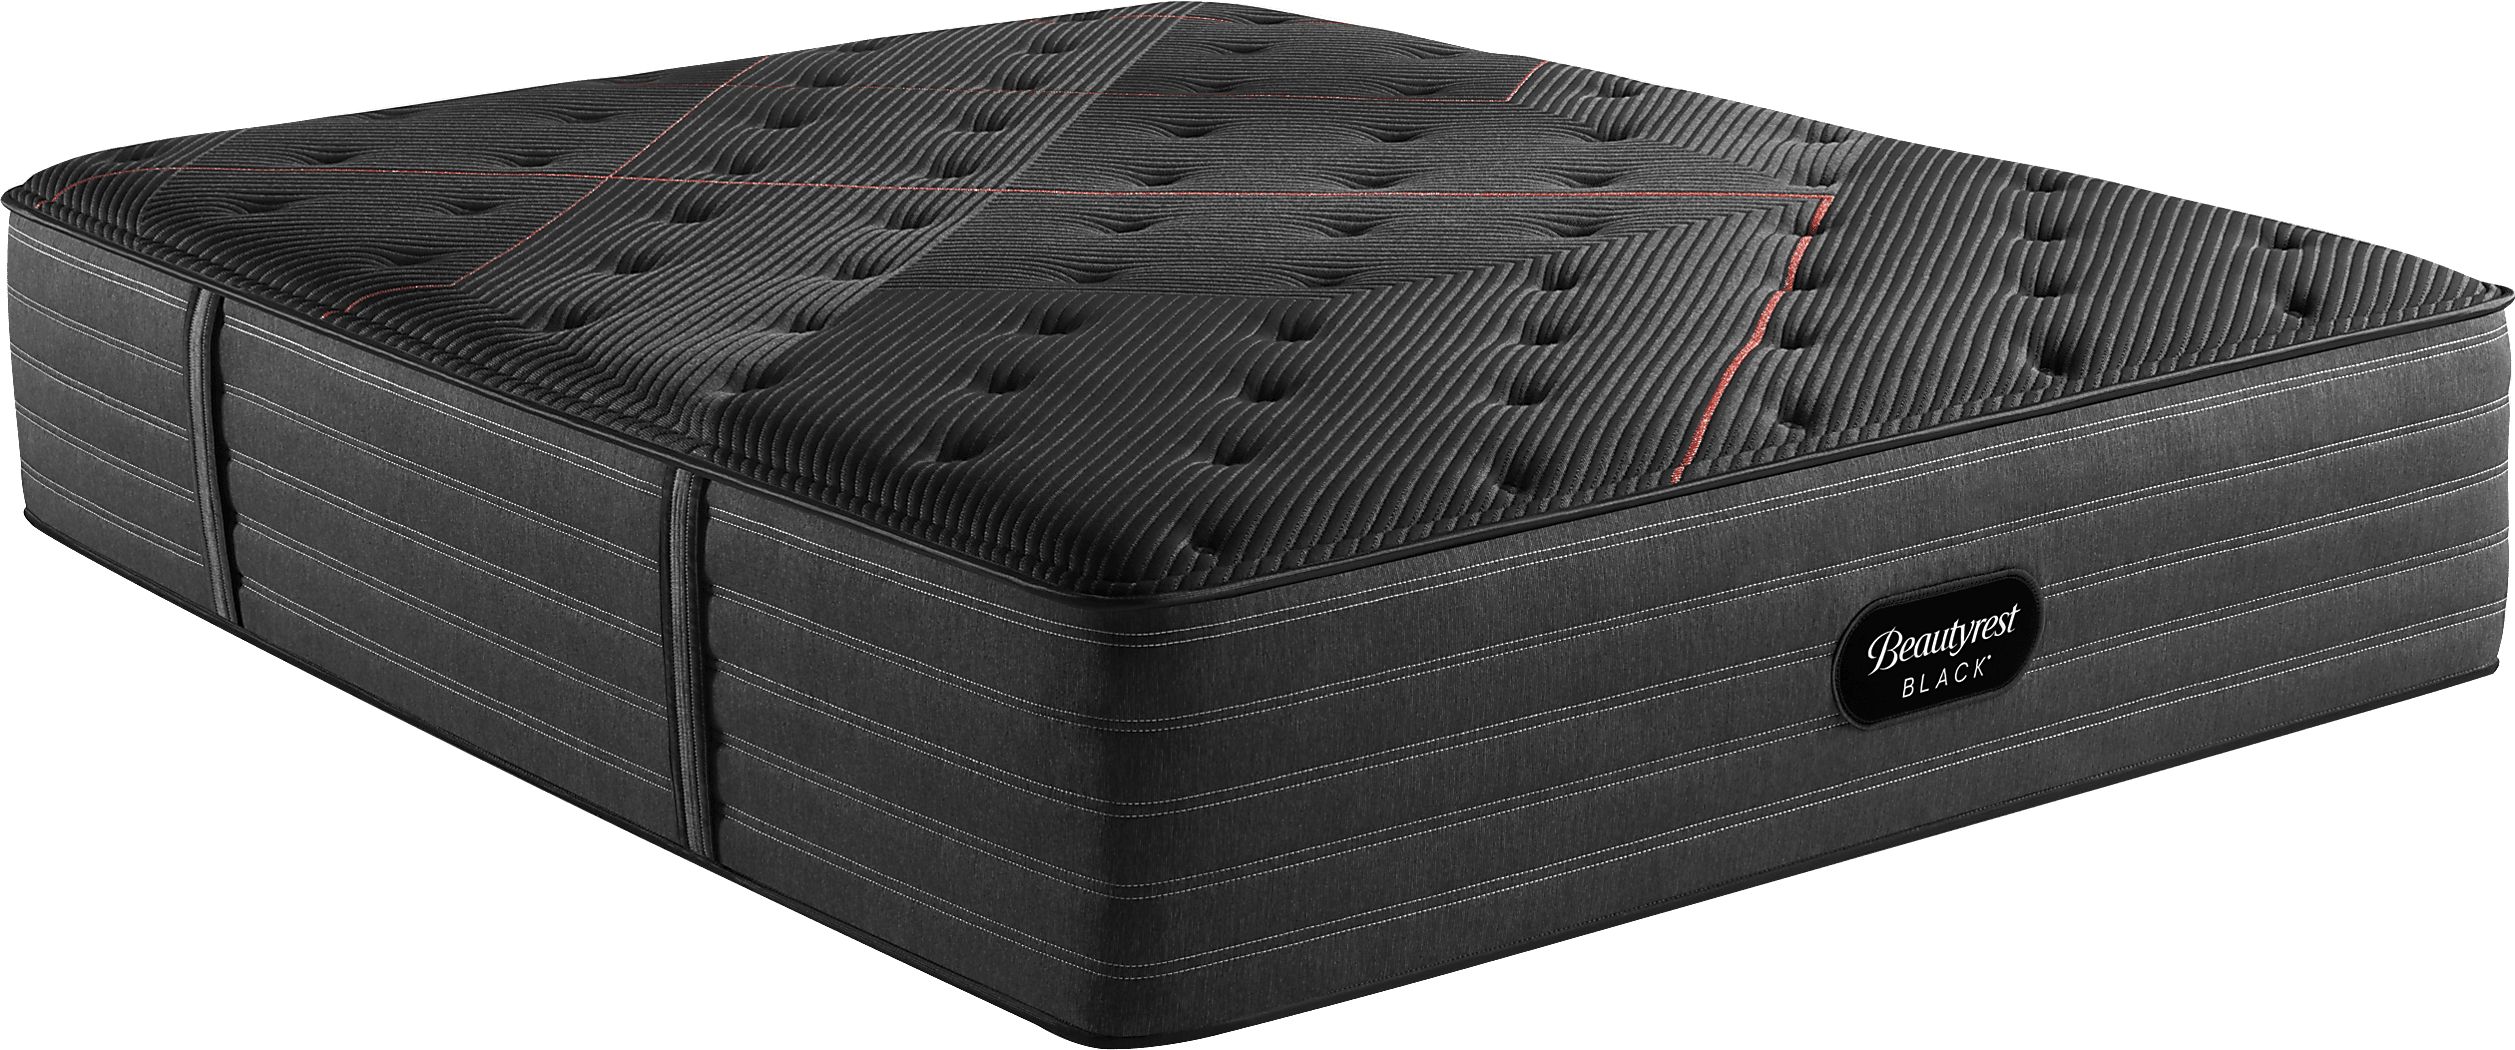 beautyrest tight top medium firm mattress reviews